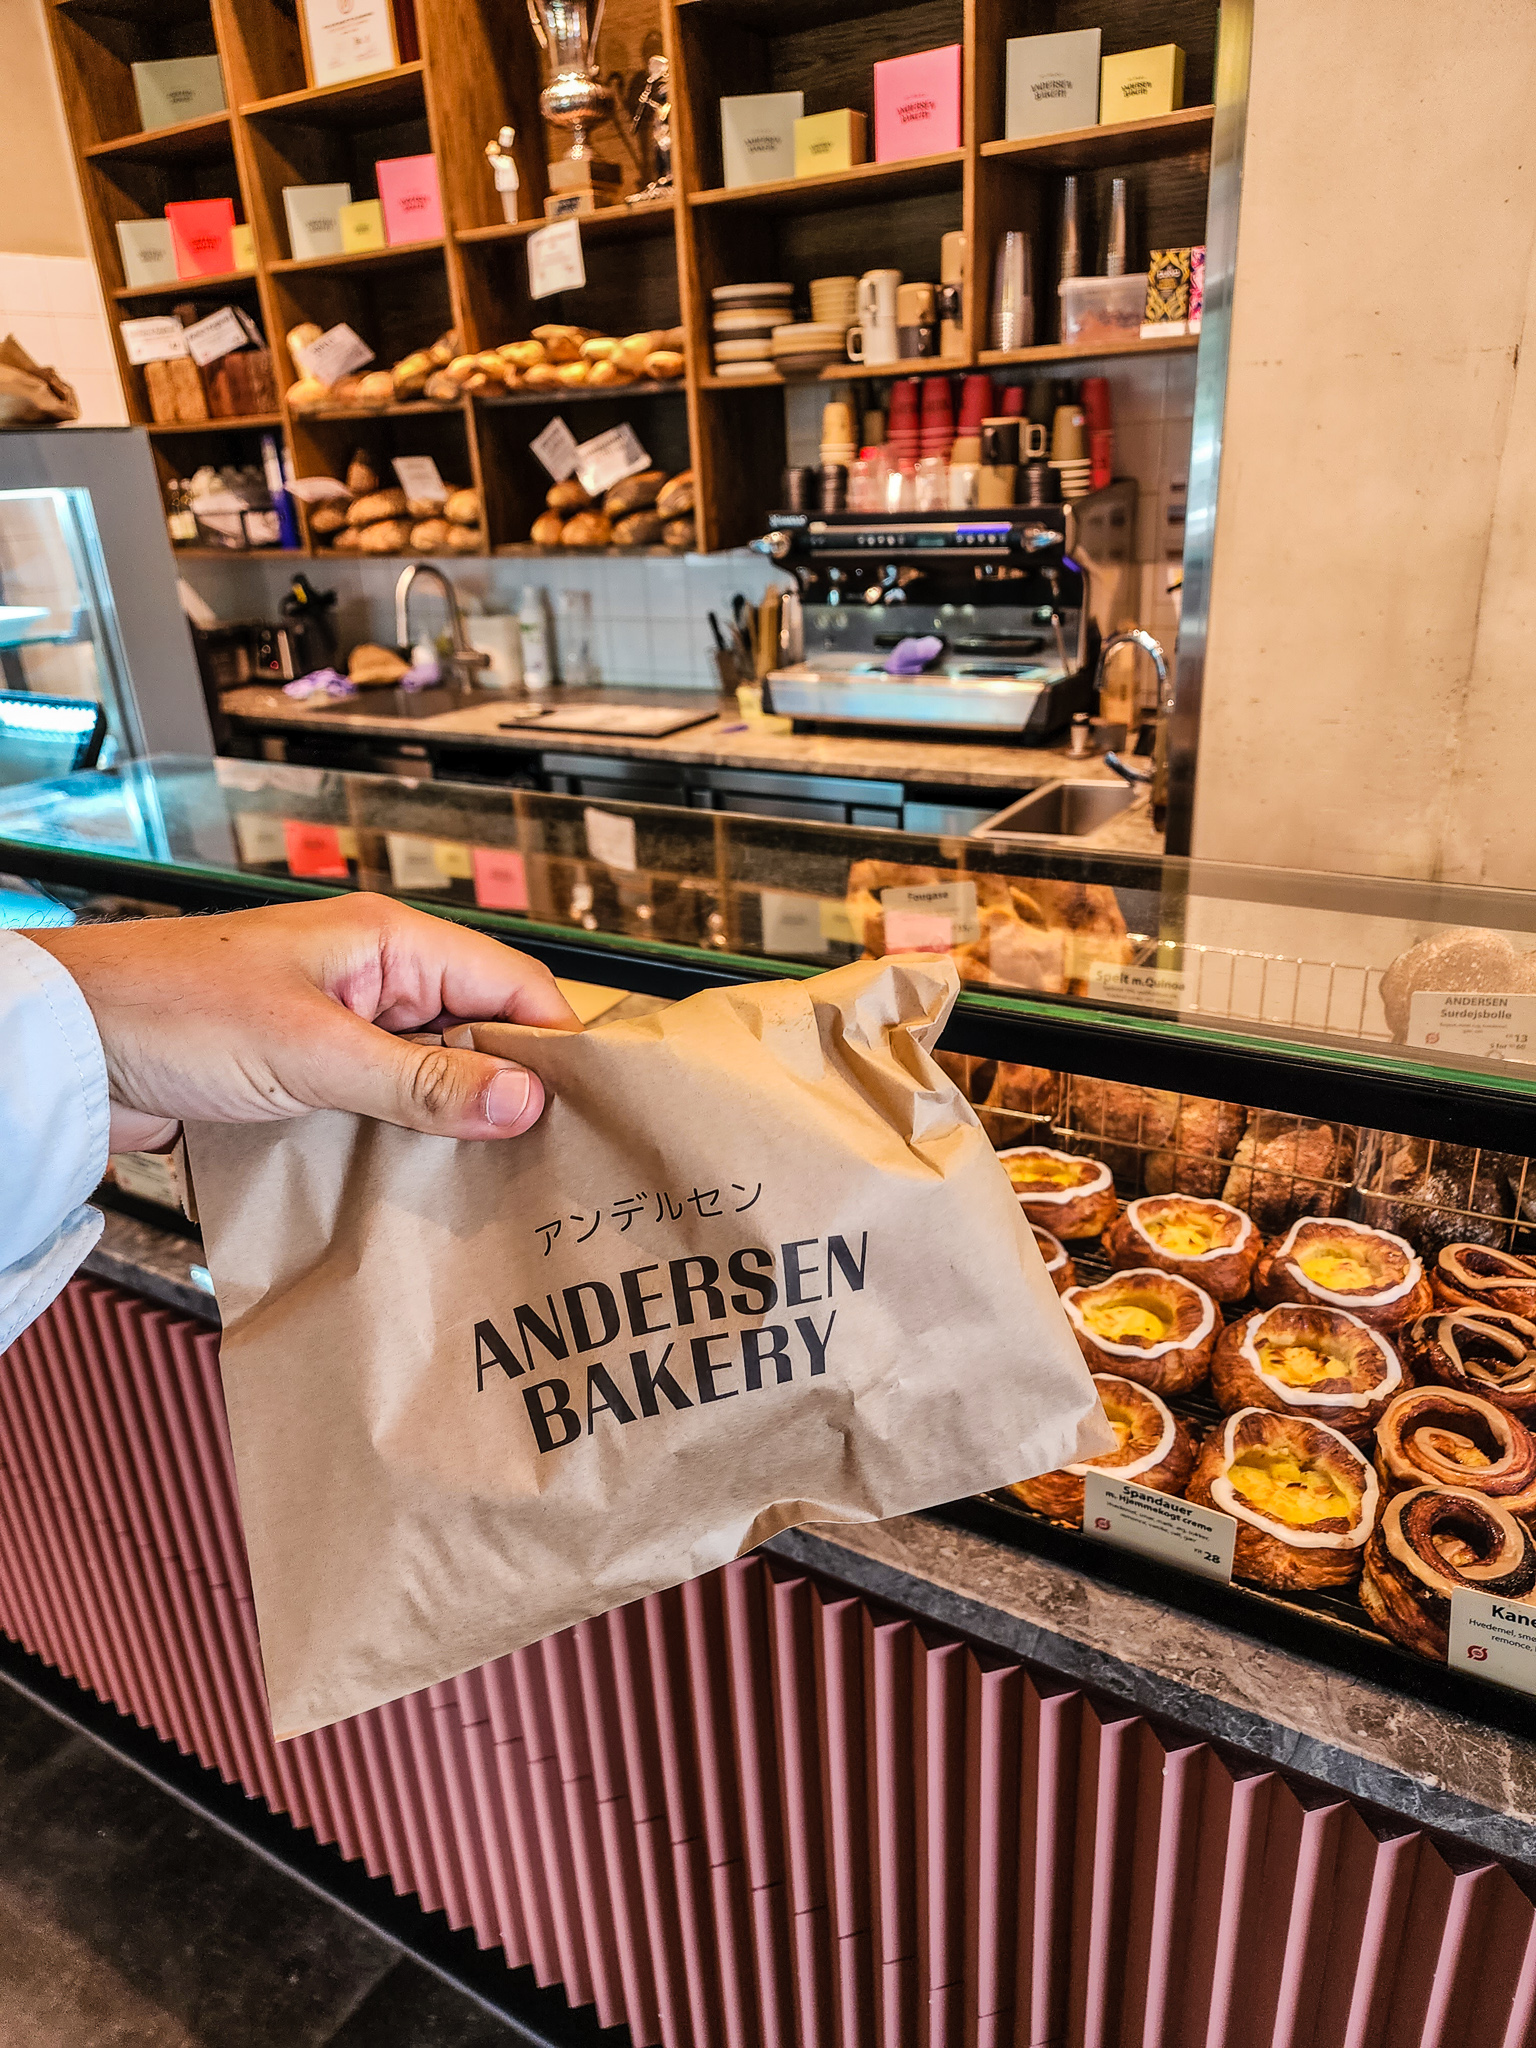 Anderson bakery best danish pastries copenhagen